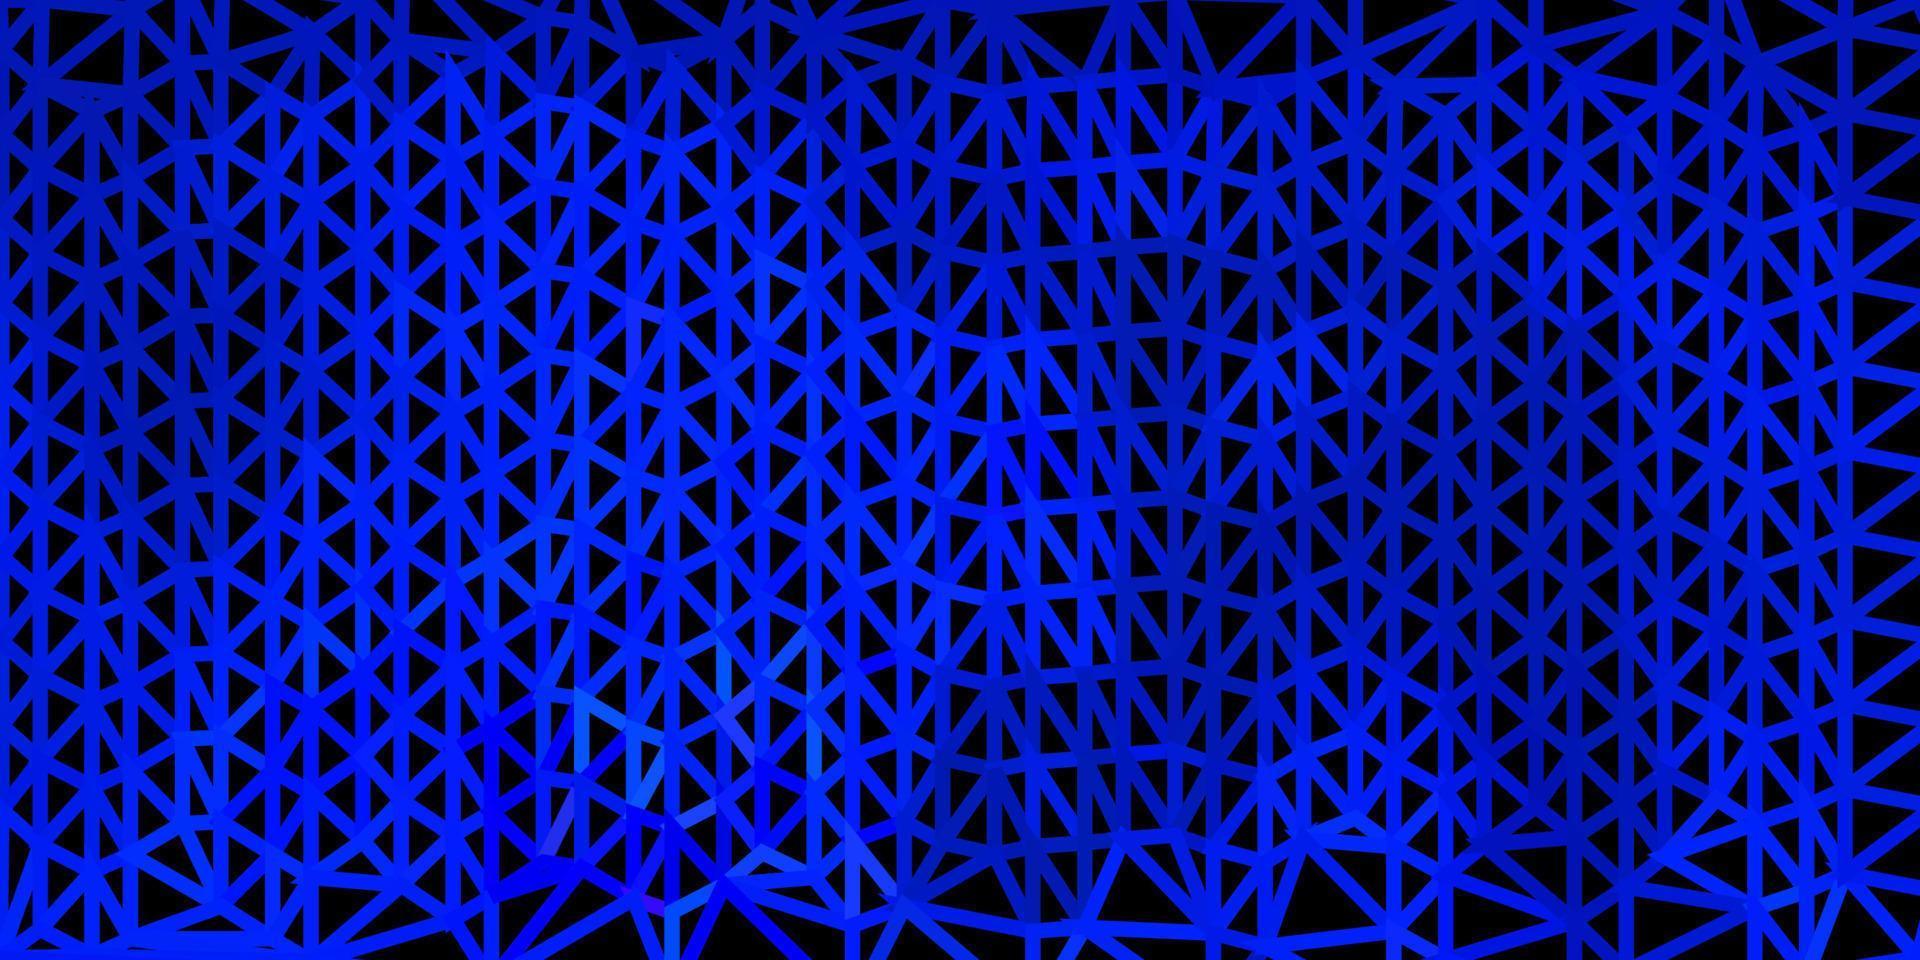 struttura del poligono gradiente vettoriale blu scuro.